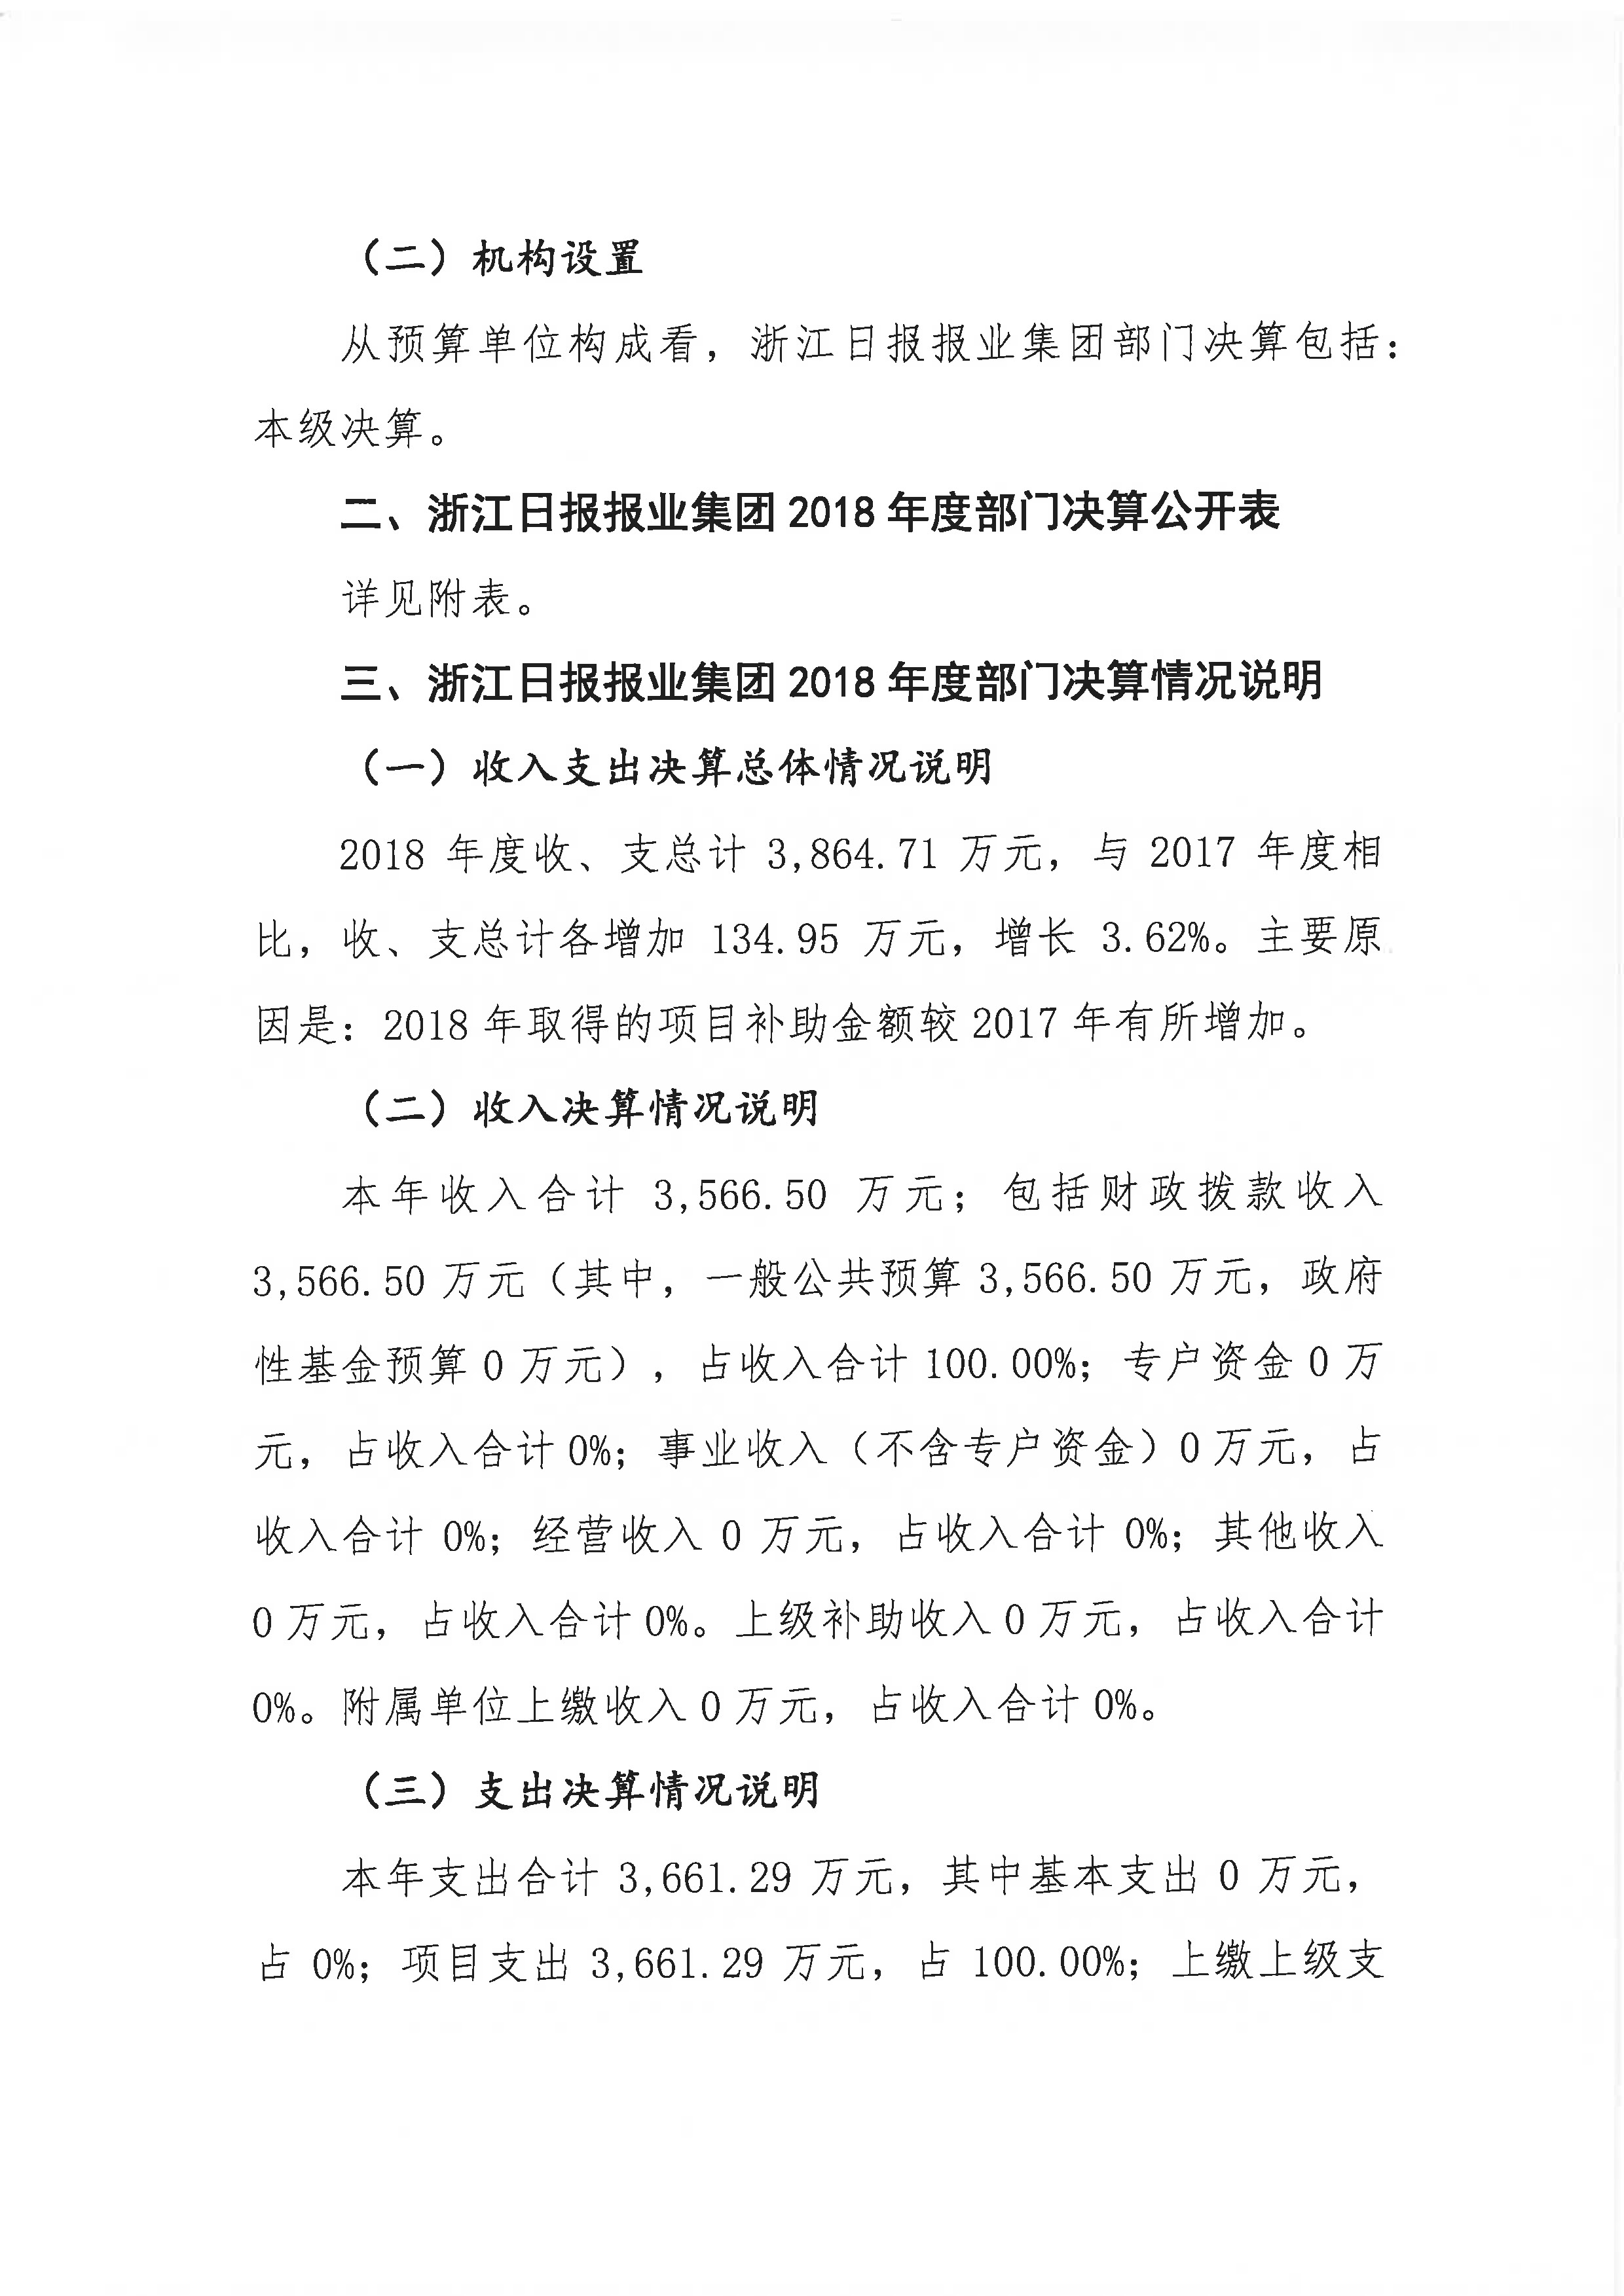 浙报集团2018年部门决算公开（终稿）_页面_02.jpg